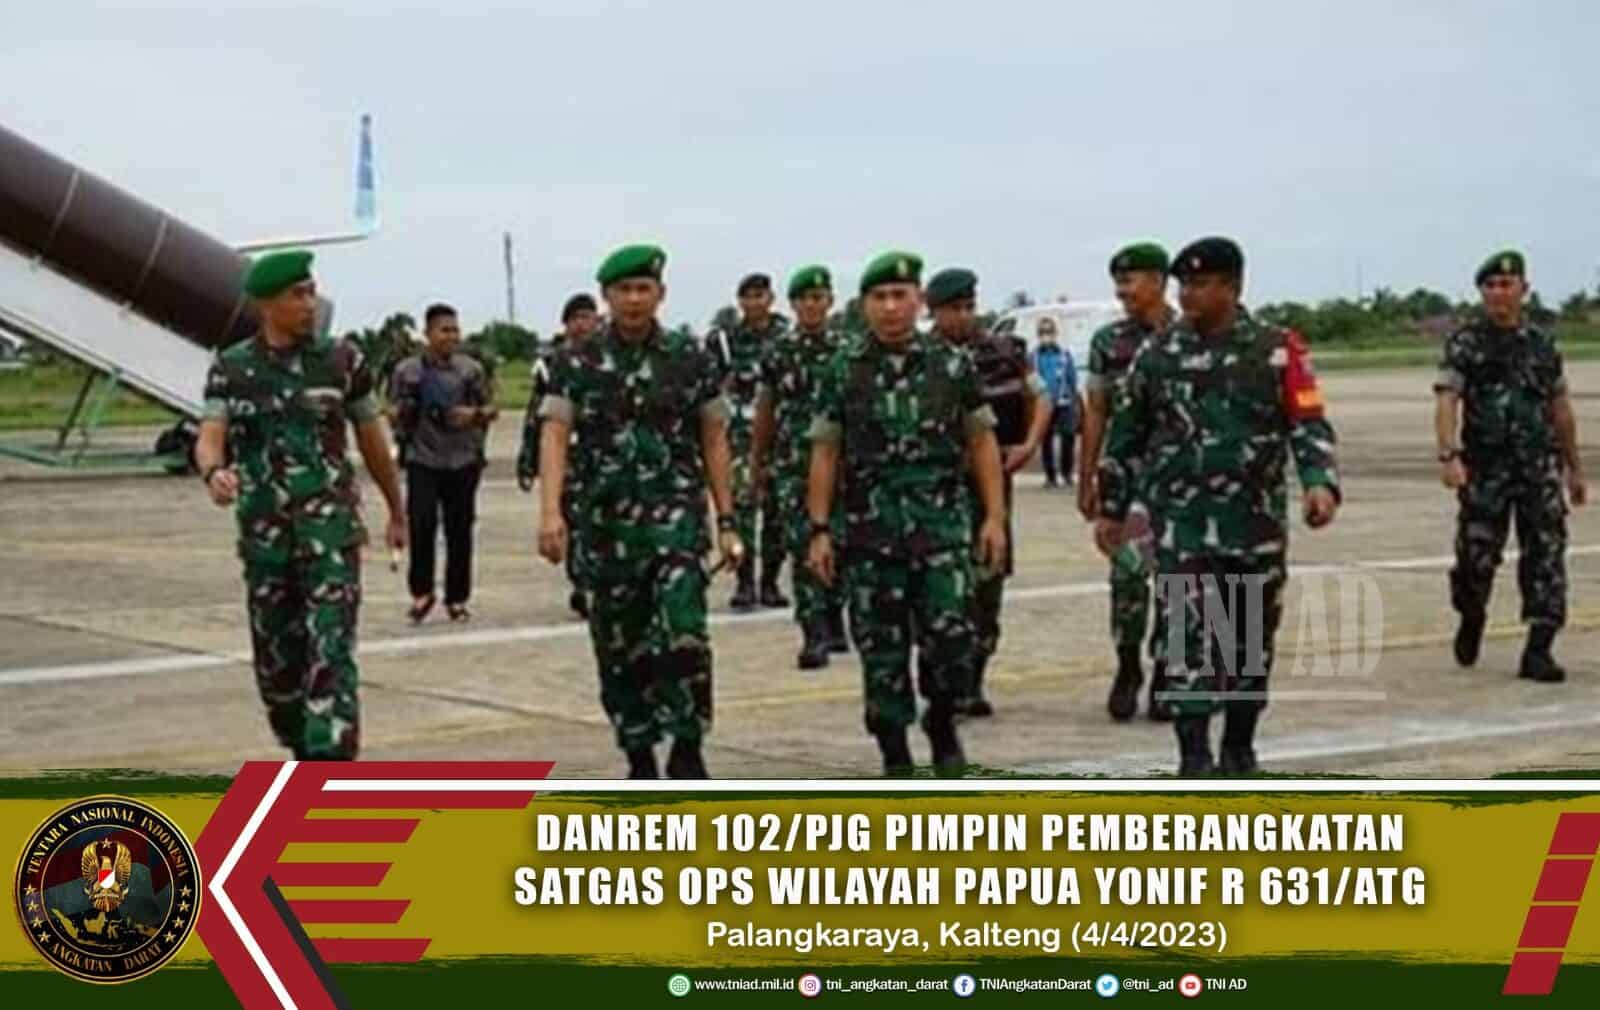 Danrem 102/Pjg Pimpin Apel Pemberangkatan Satgas Ops Wilayah Papua Yonif R 631/Atg